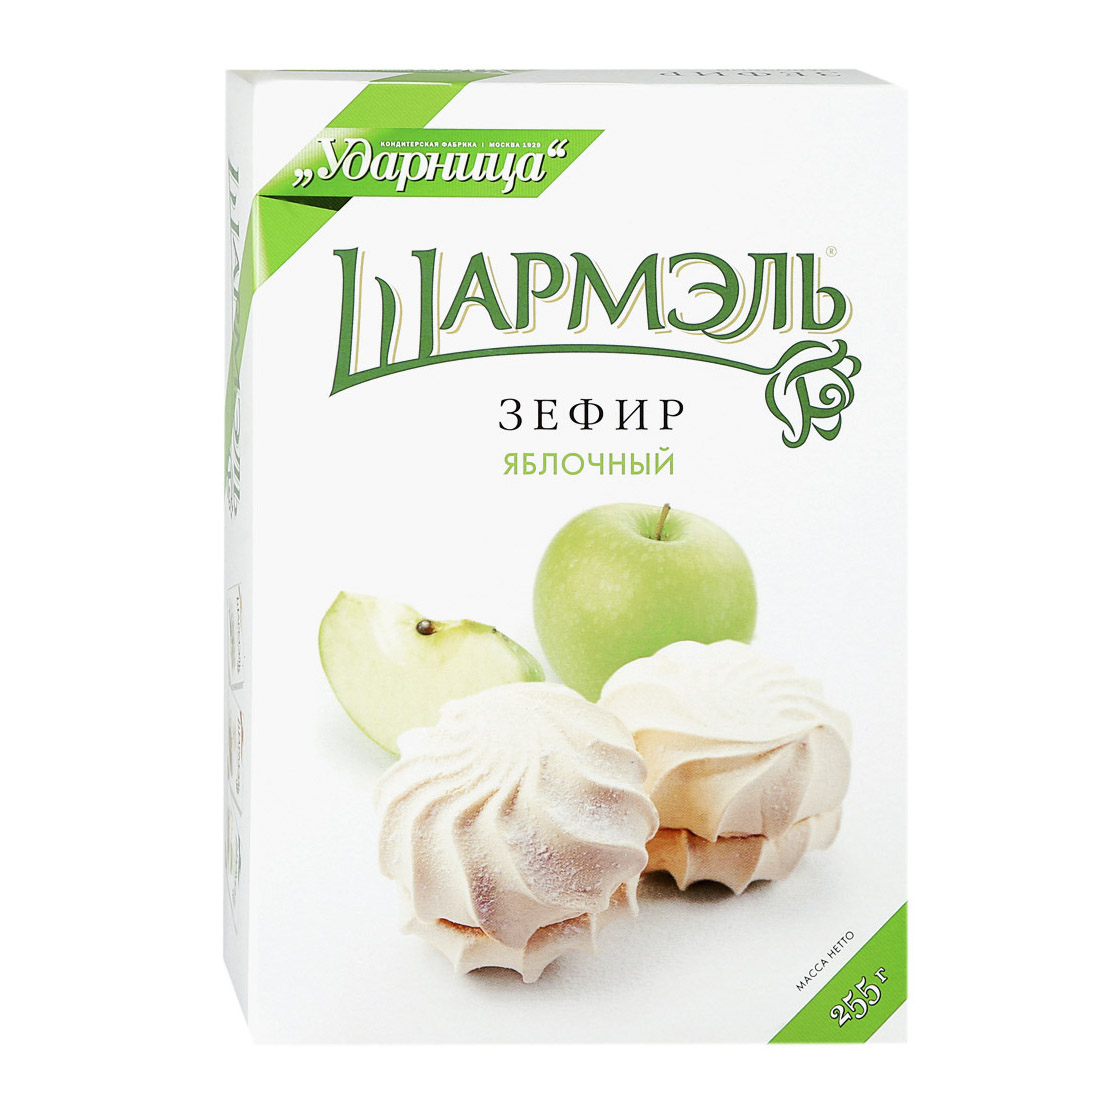 Зефир Шармэль яблочный 255 г зефир шармэль со вкусом крем брюле 255 г